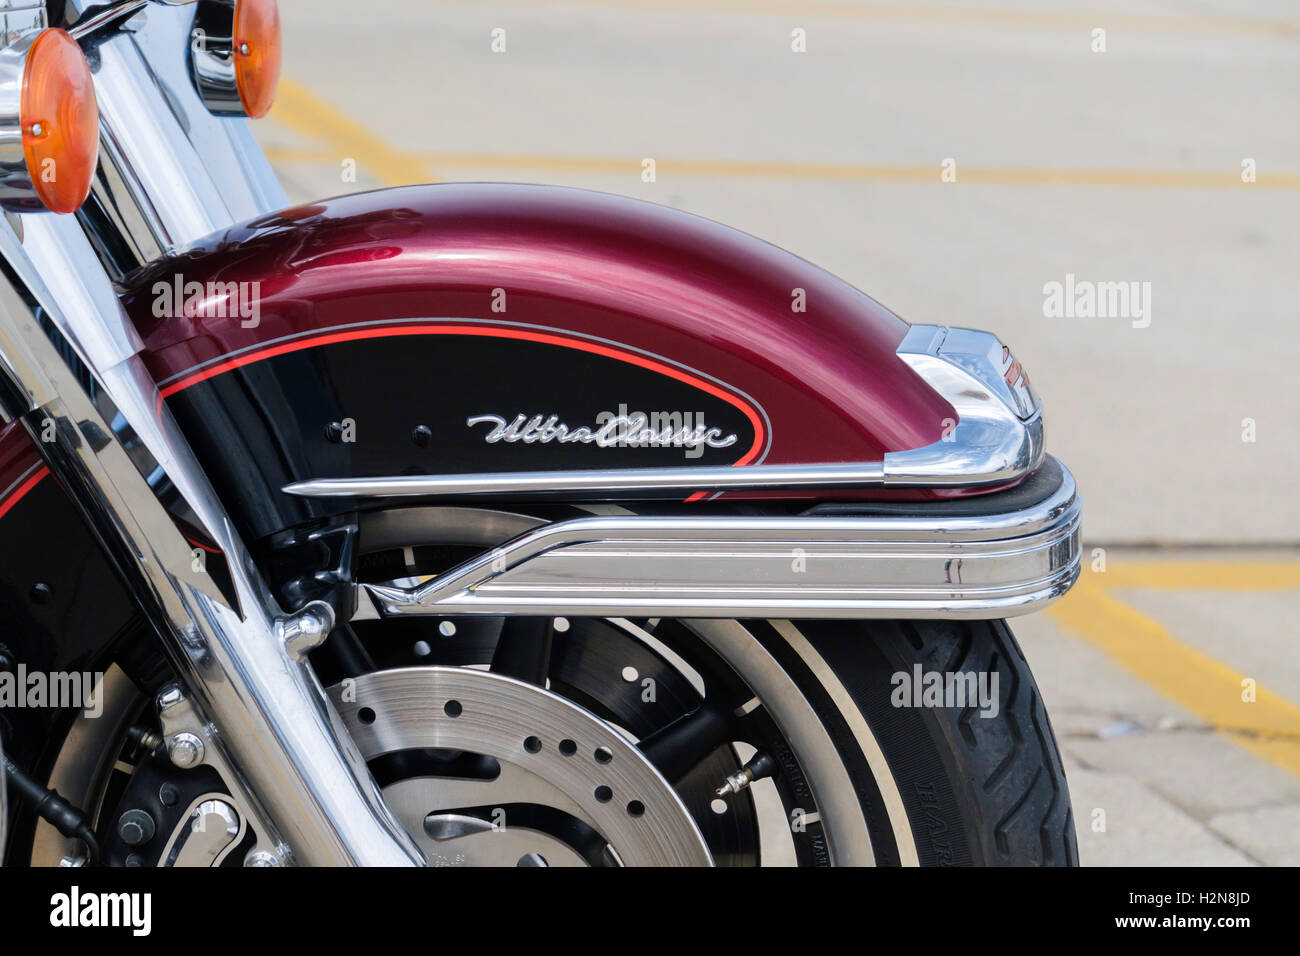 La ruota anteriore di un rosso intenso Harley Davidson Ultra Classic motociclo, primo piano. Oklahoma City, Oklahoma, Stati Uniti d'America. Foto Stock